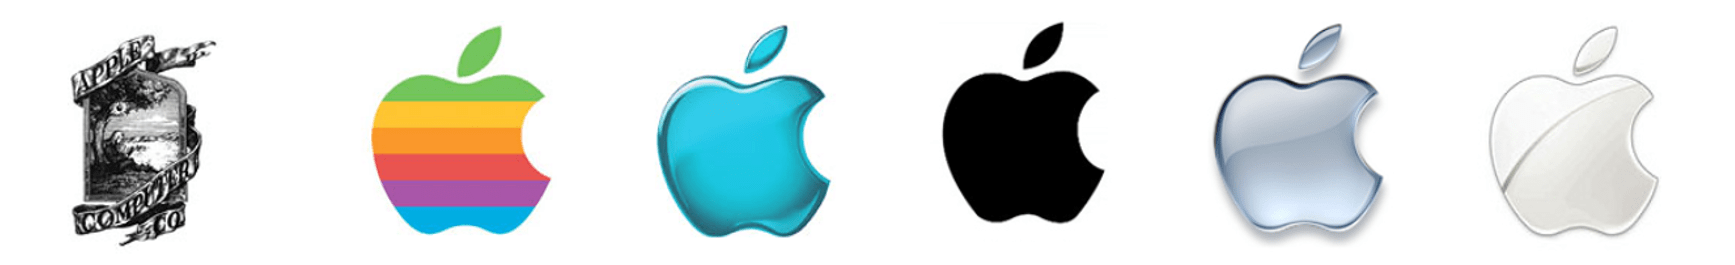 Evoluzione logo apple